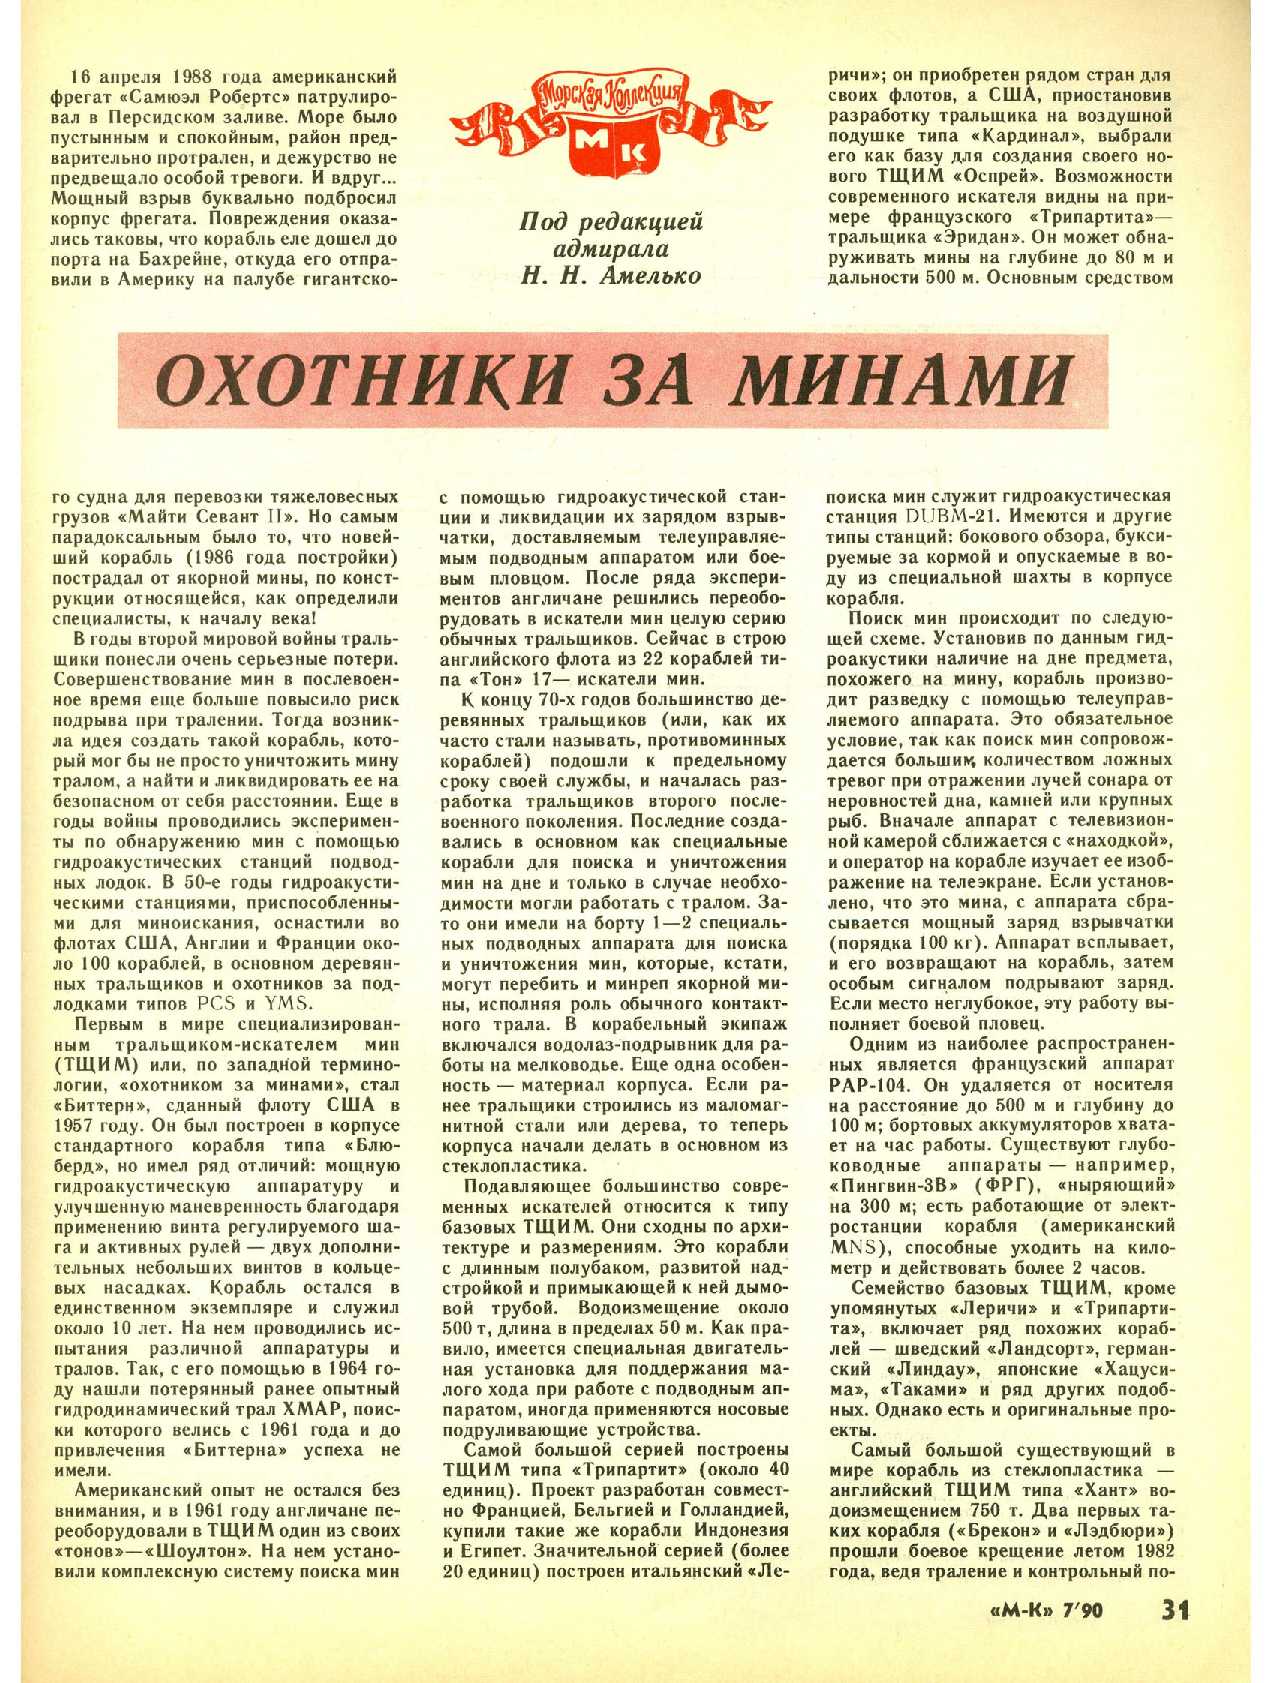 МК 7, 1990, 31 c.